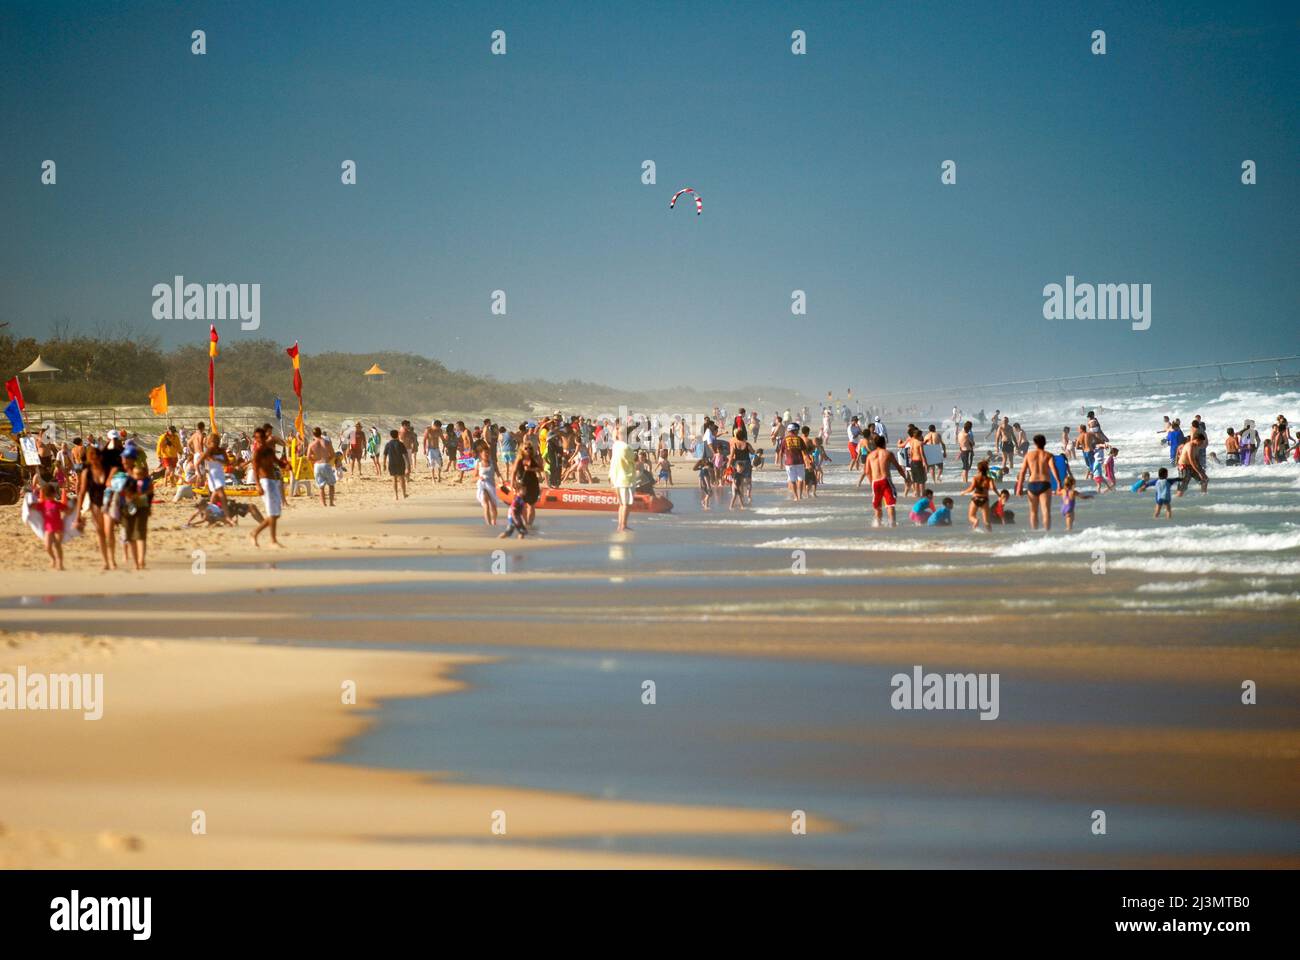 Affollate sulla spiaggia di Main Beach, una popolare destinazione turistica. Foto Stock